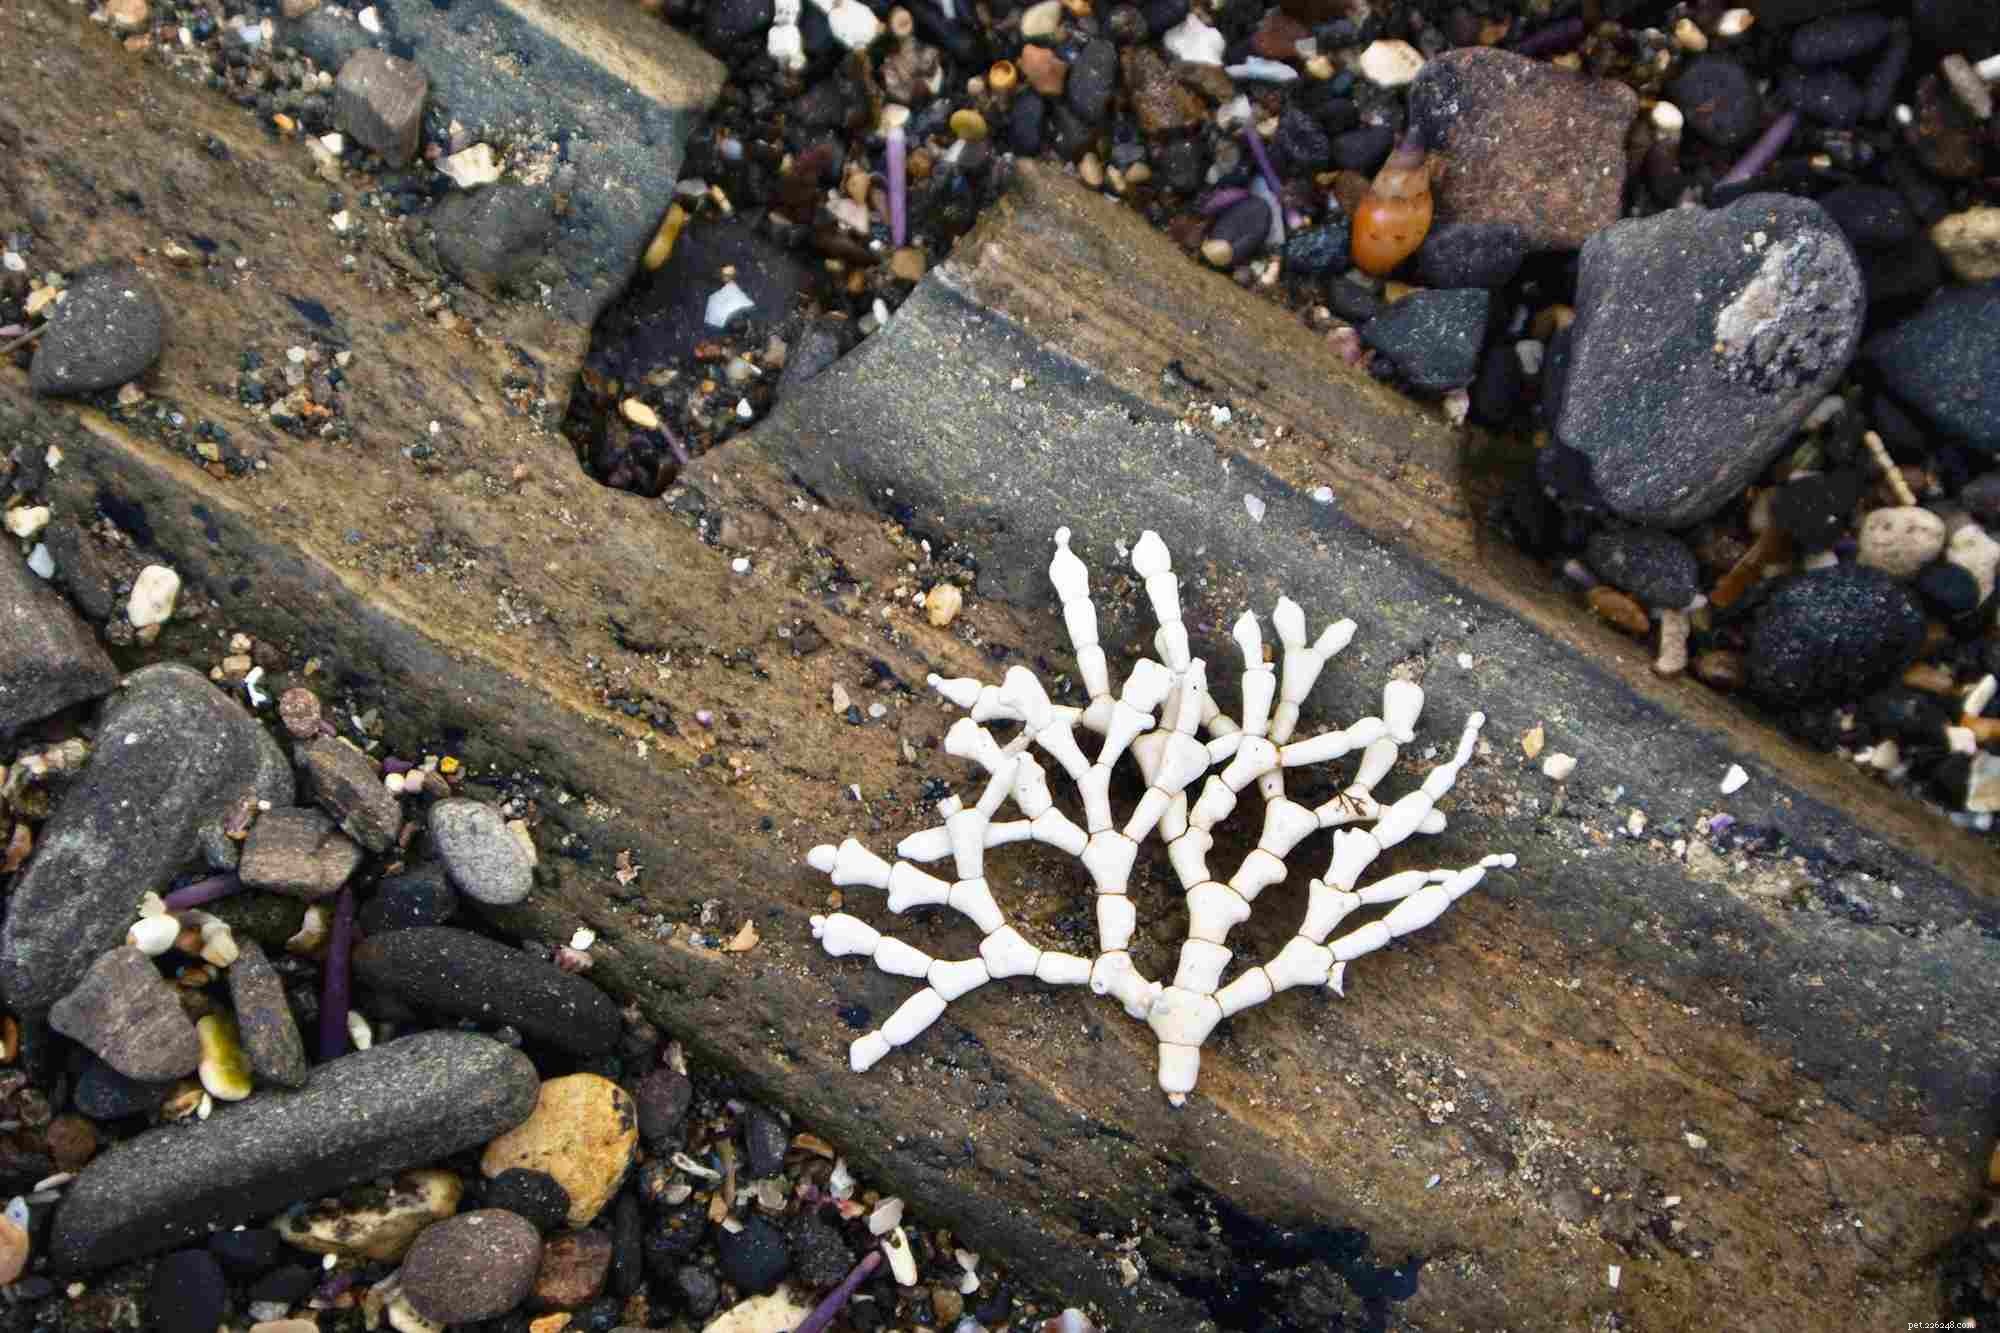 Световой шок:недооцененная причина обесцвечивания коралловыми водорослями